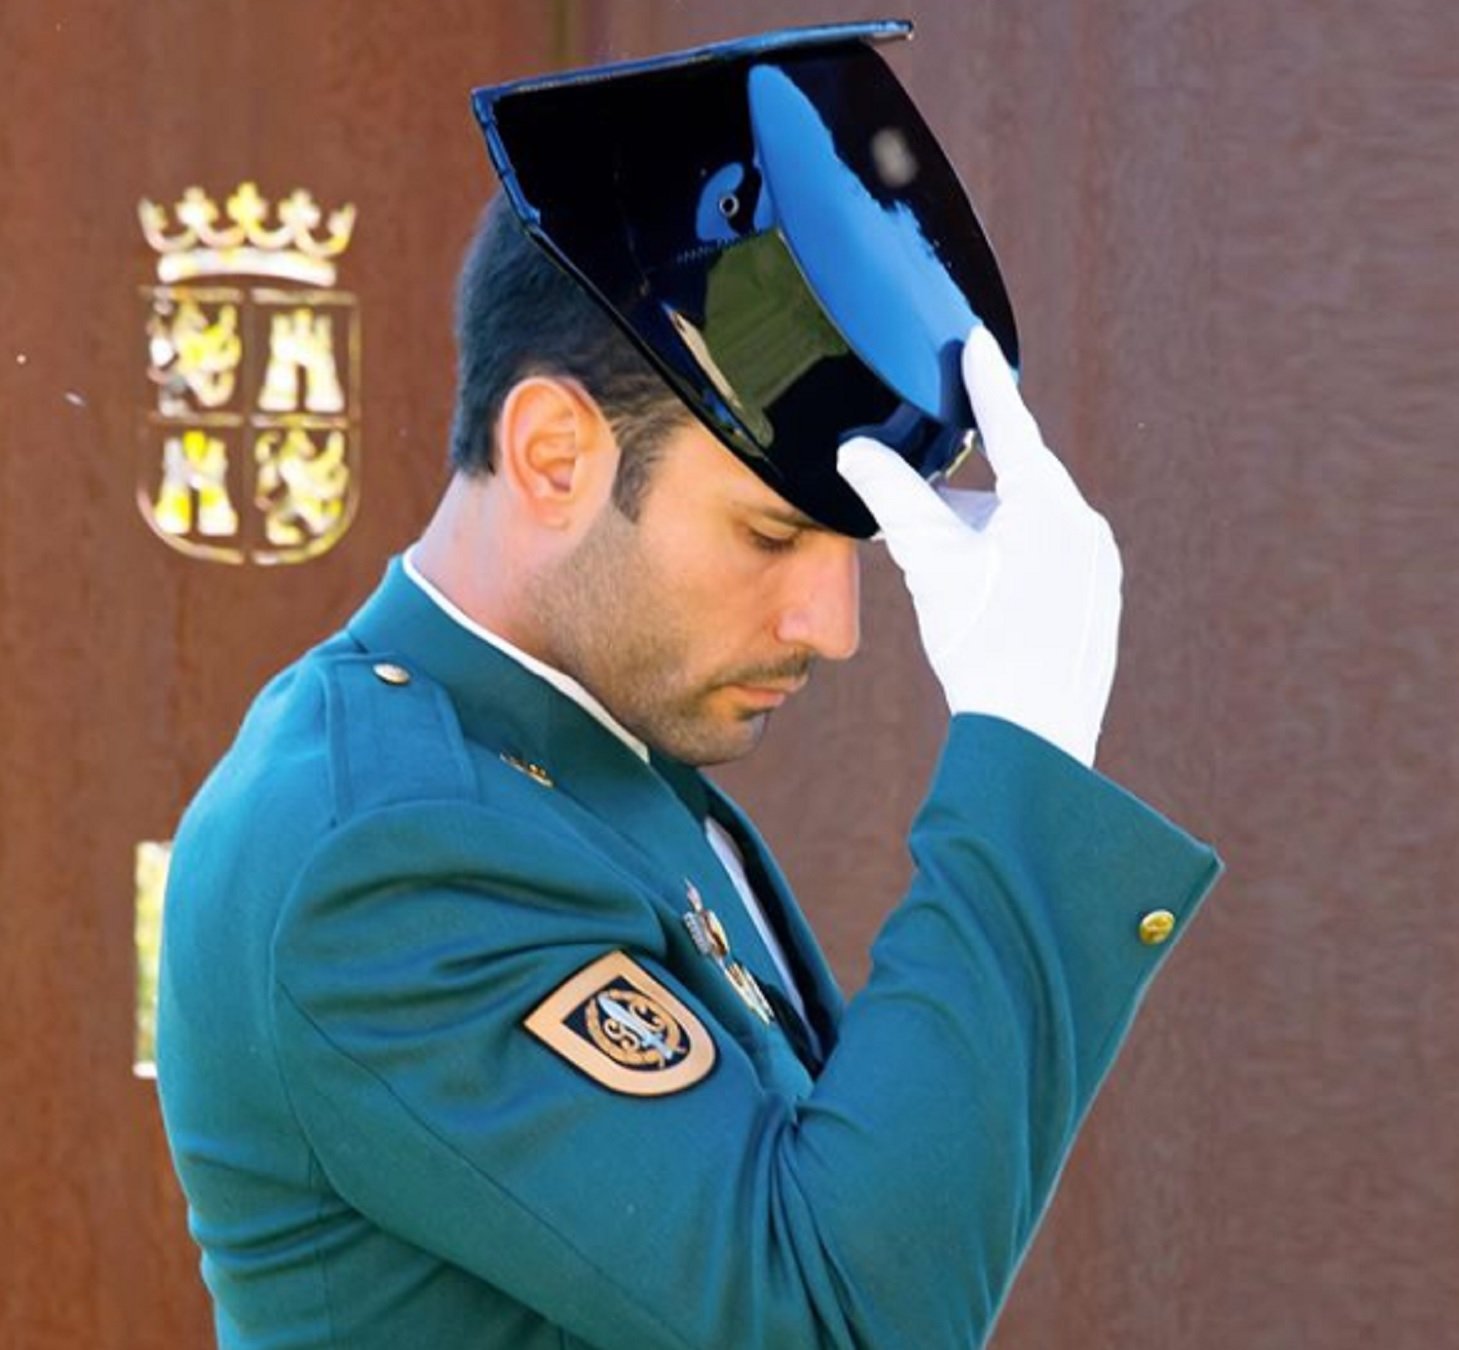 El poli más guapo de España desnudo a T5: "Viva el cuerpo de la guardia civil"